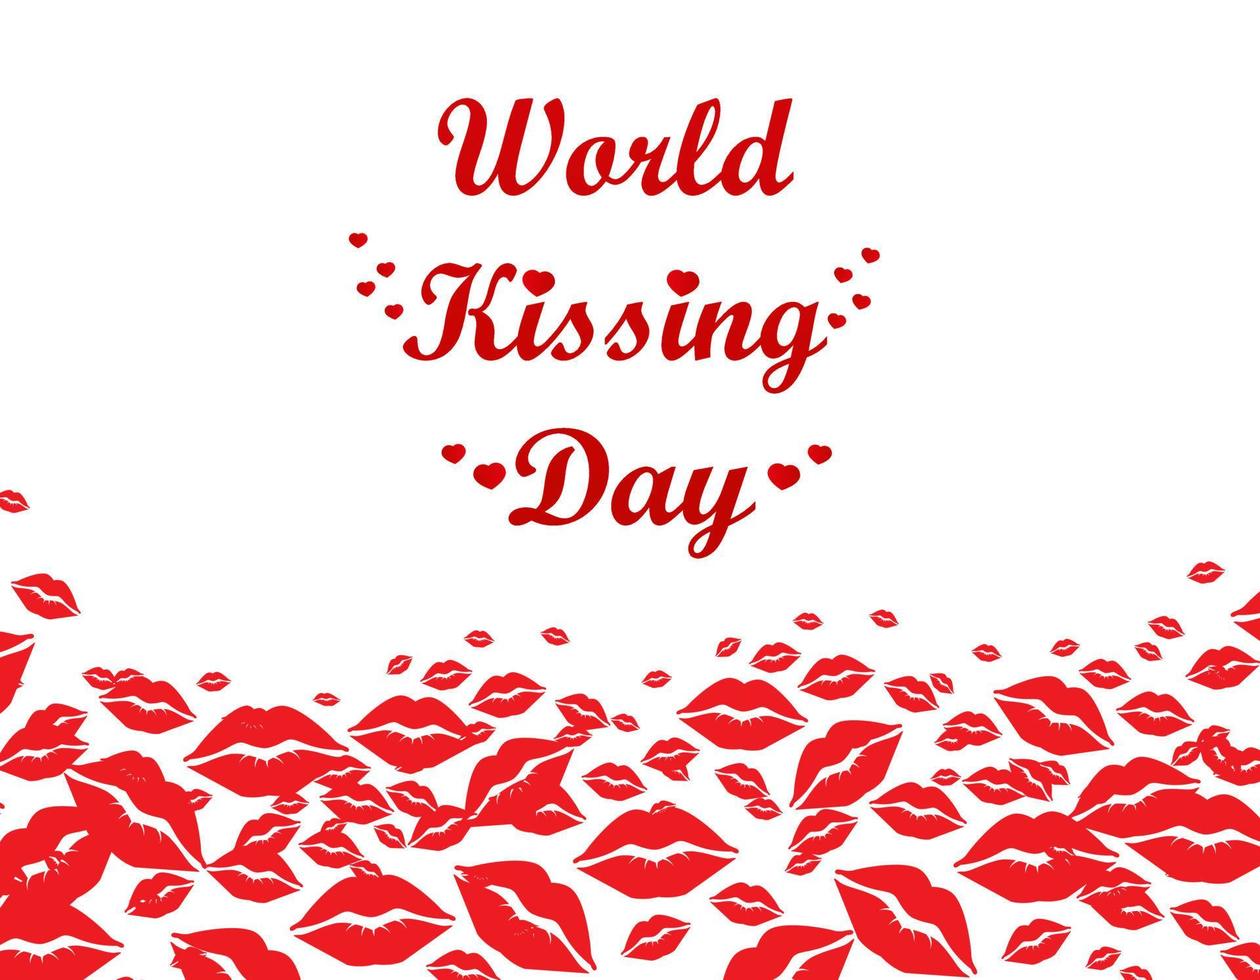 letras del día mundial de los besos en los labios. plantilla para tarjeta, póster, impresión. vector